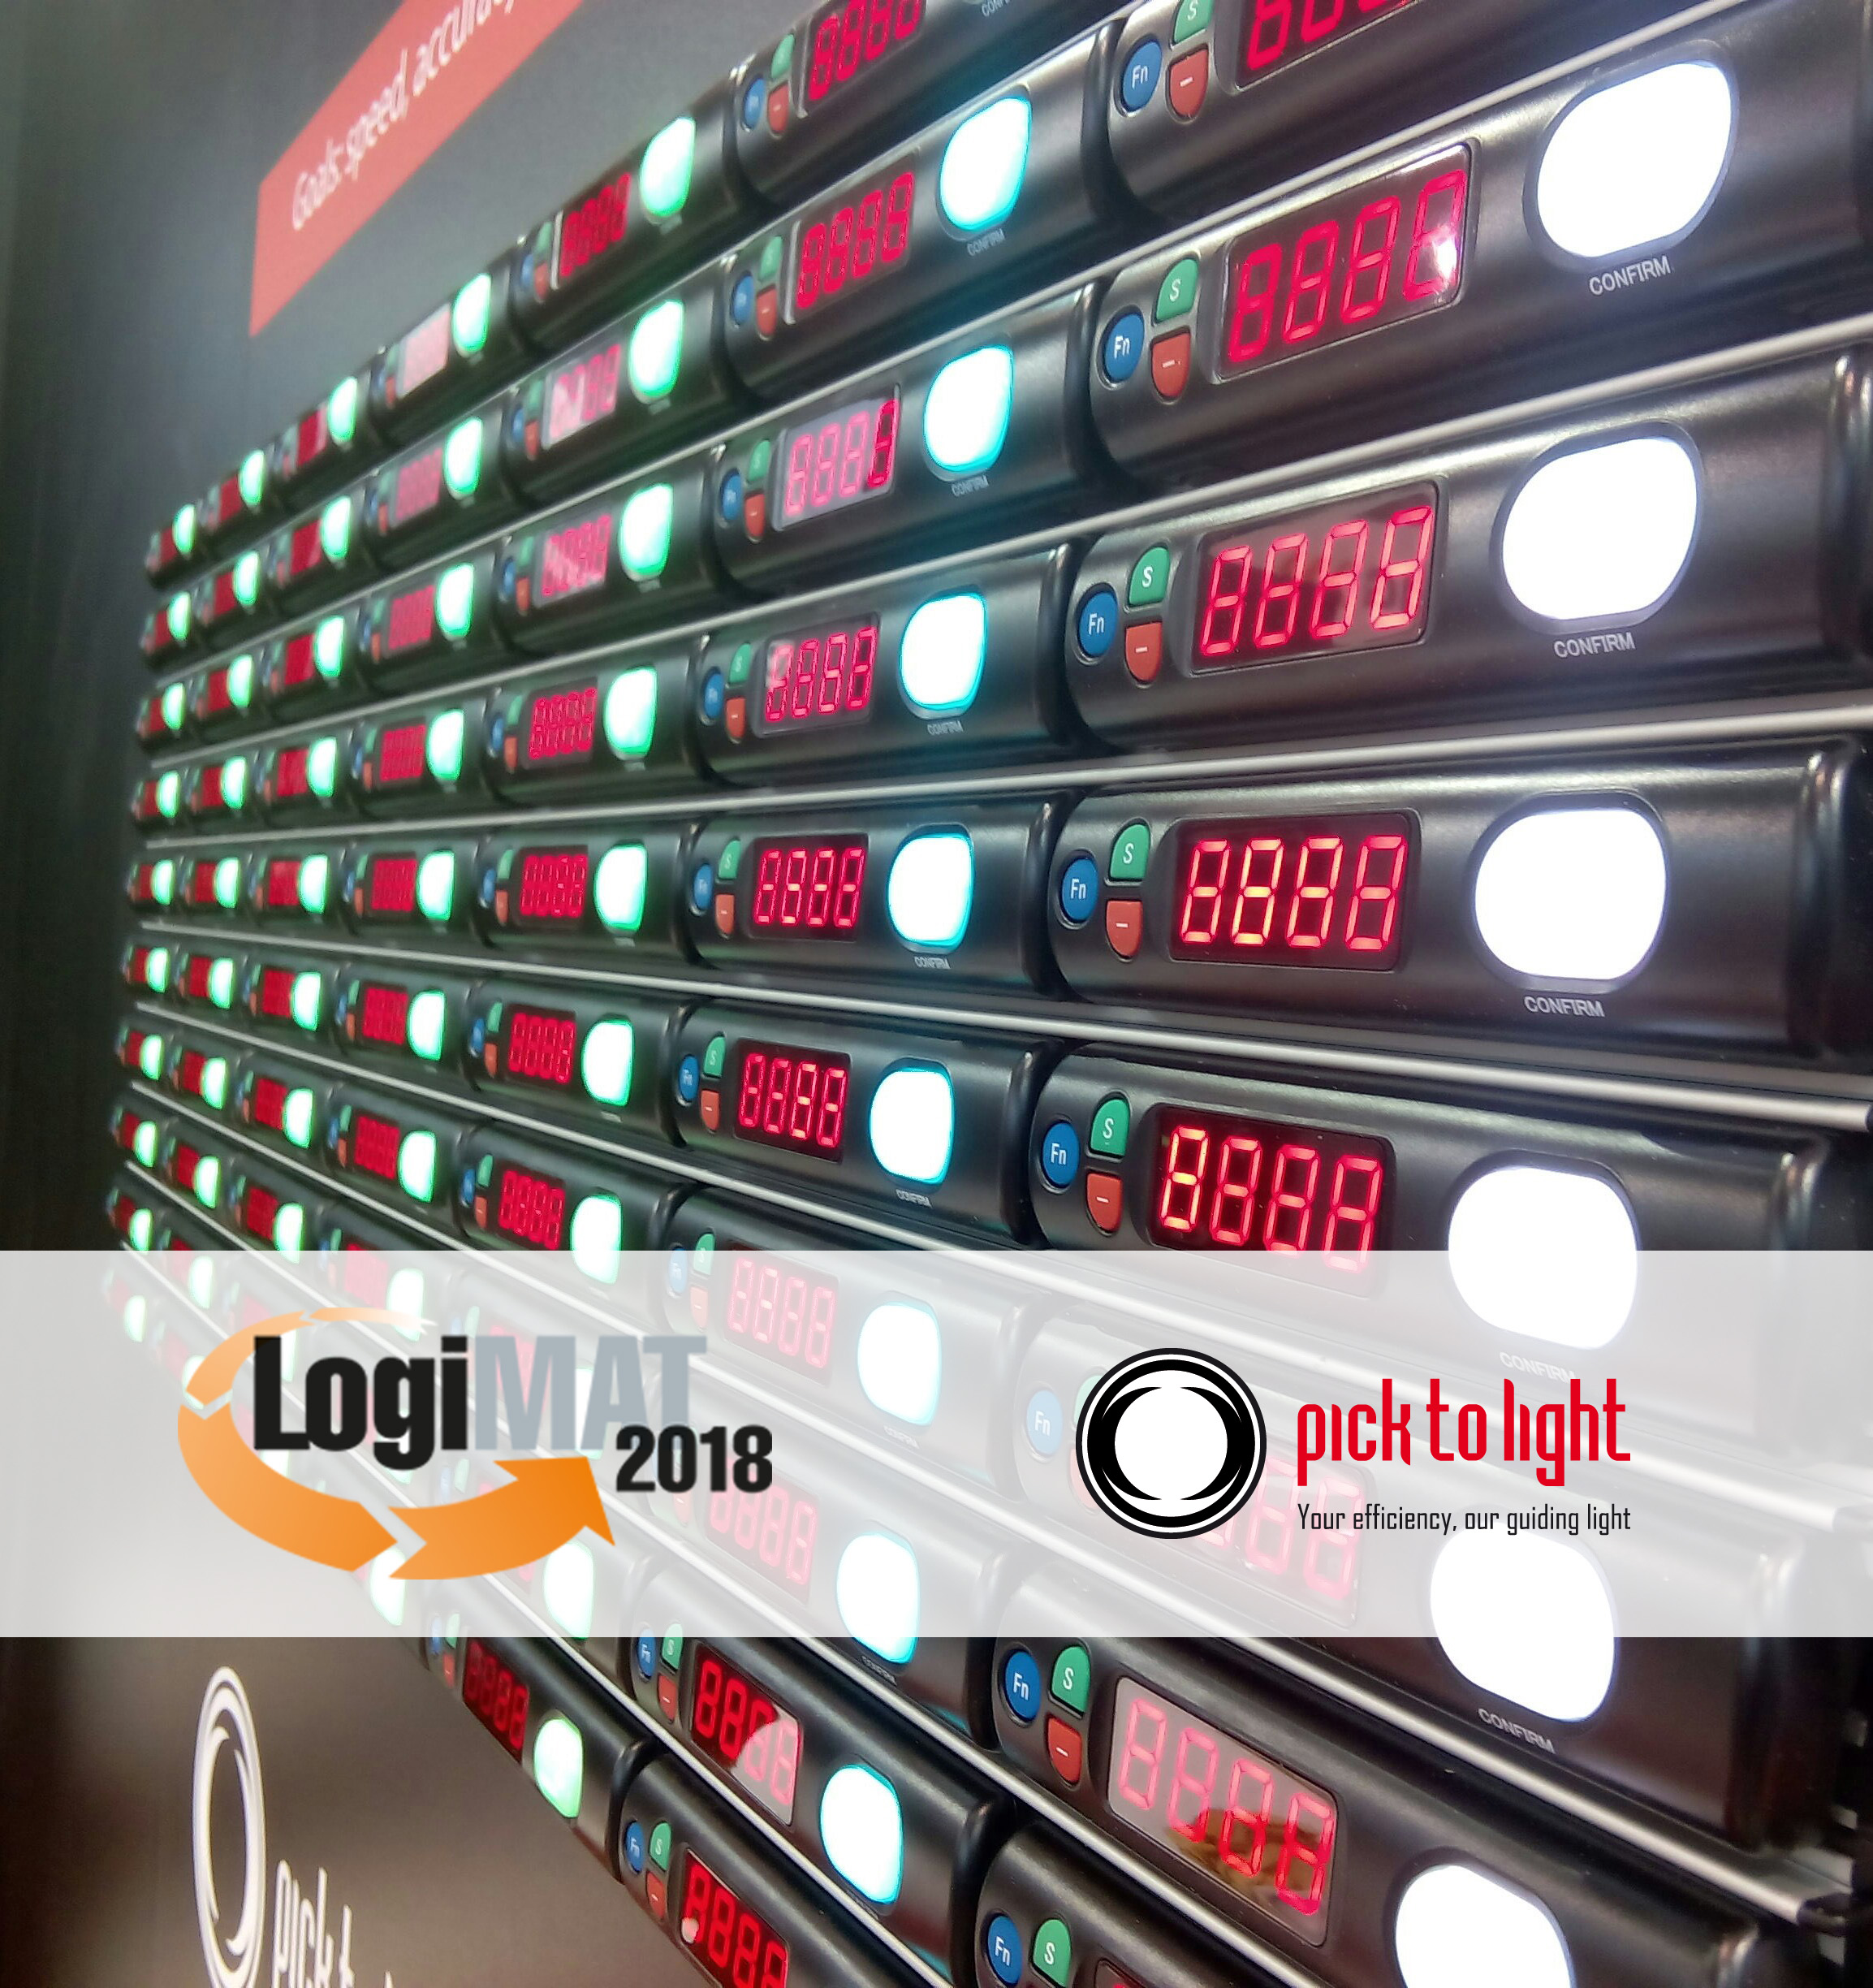 Pick To Light Systems participe à nouveau à la 16e edition de logimat